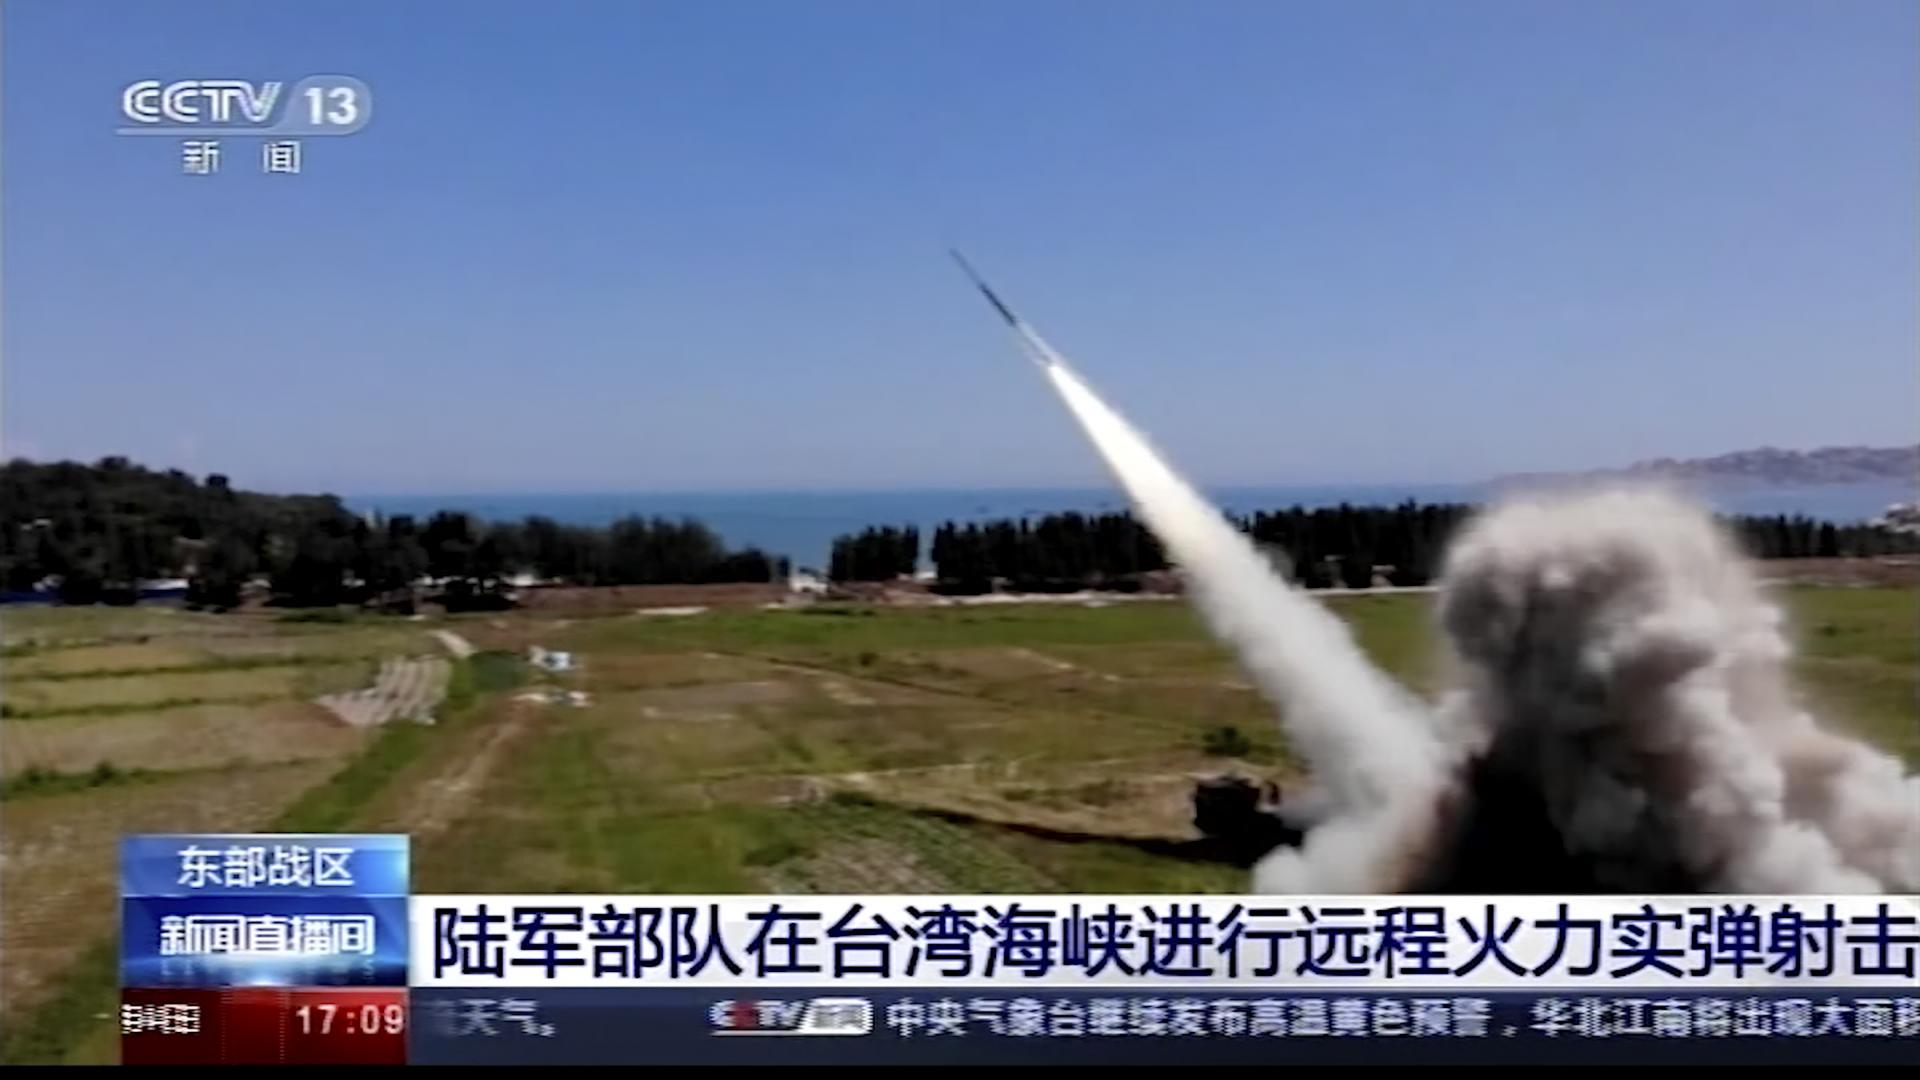 Päť čínskych balistických rakiet dopadlo do japonskej výlučnej ekonomickej zóny